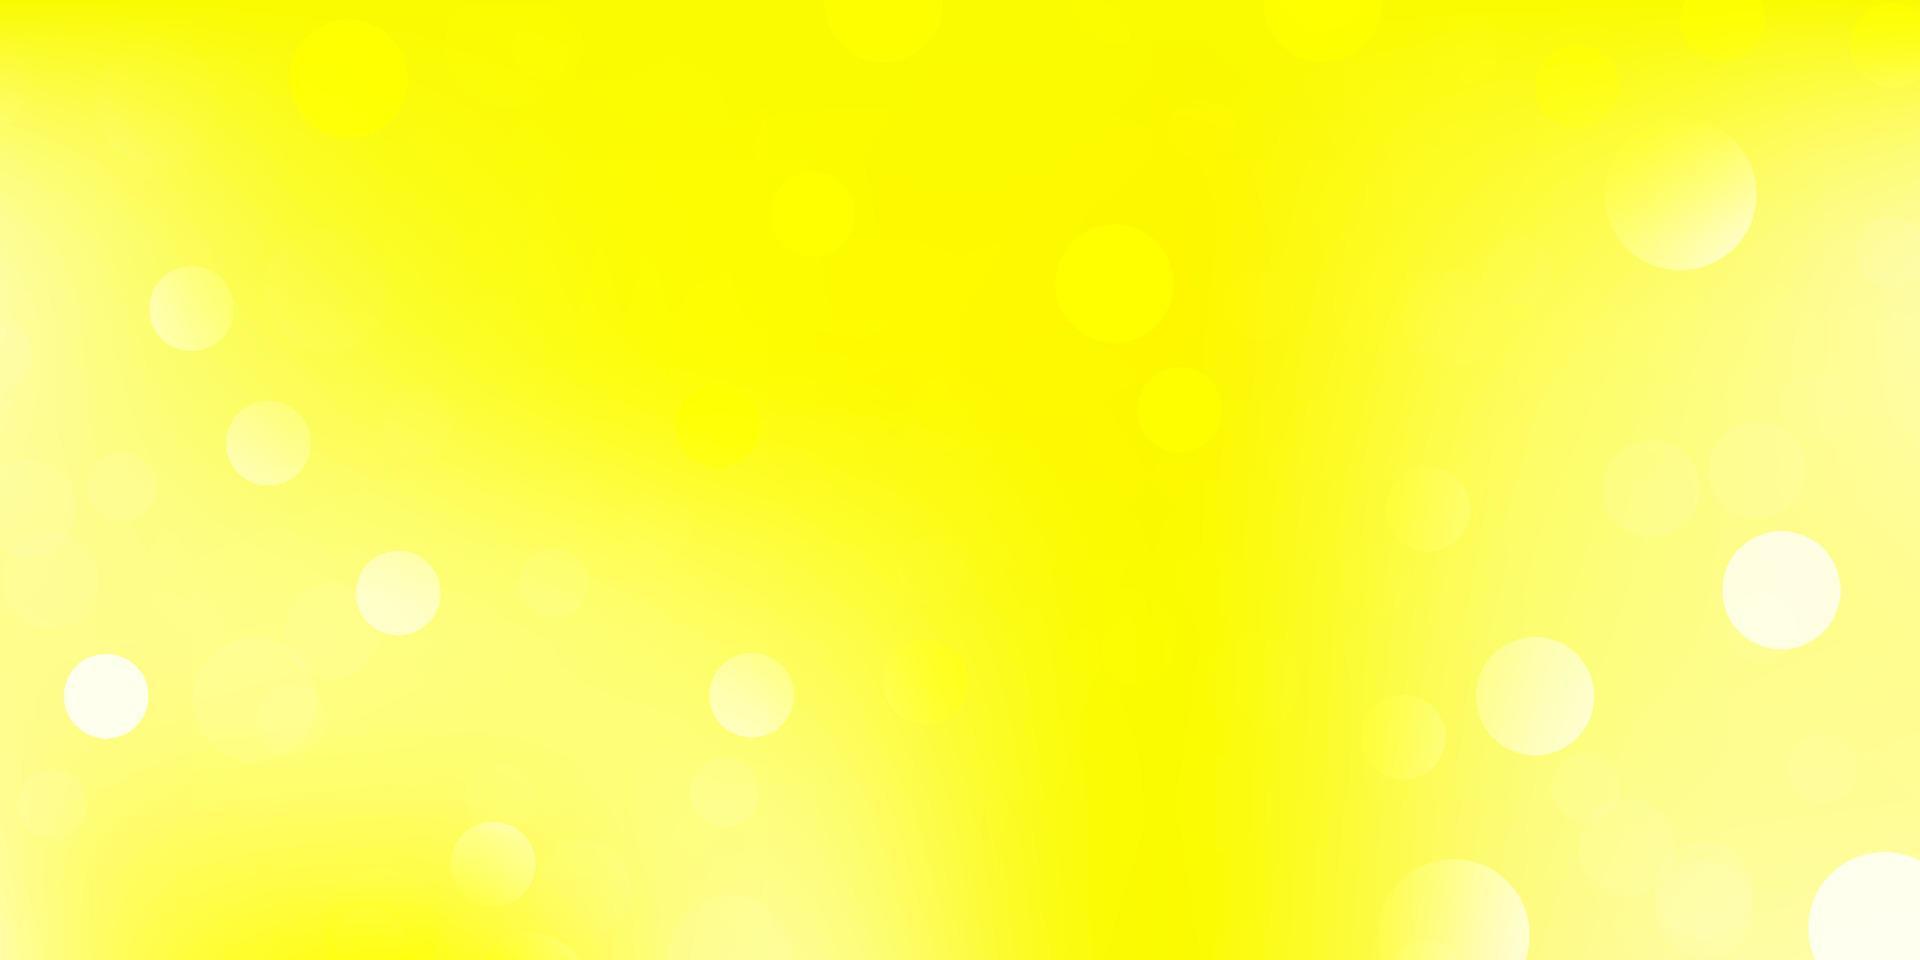 textura de vector amarillo claro con discos.